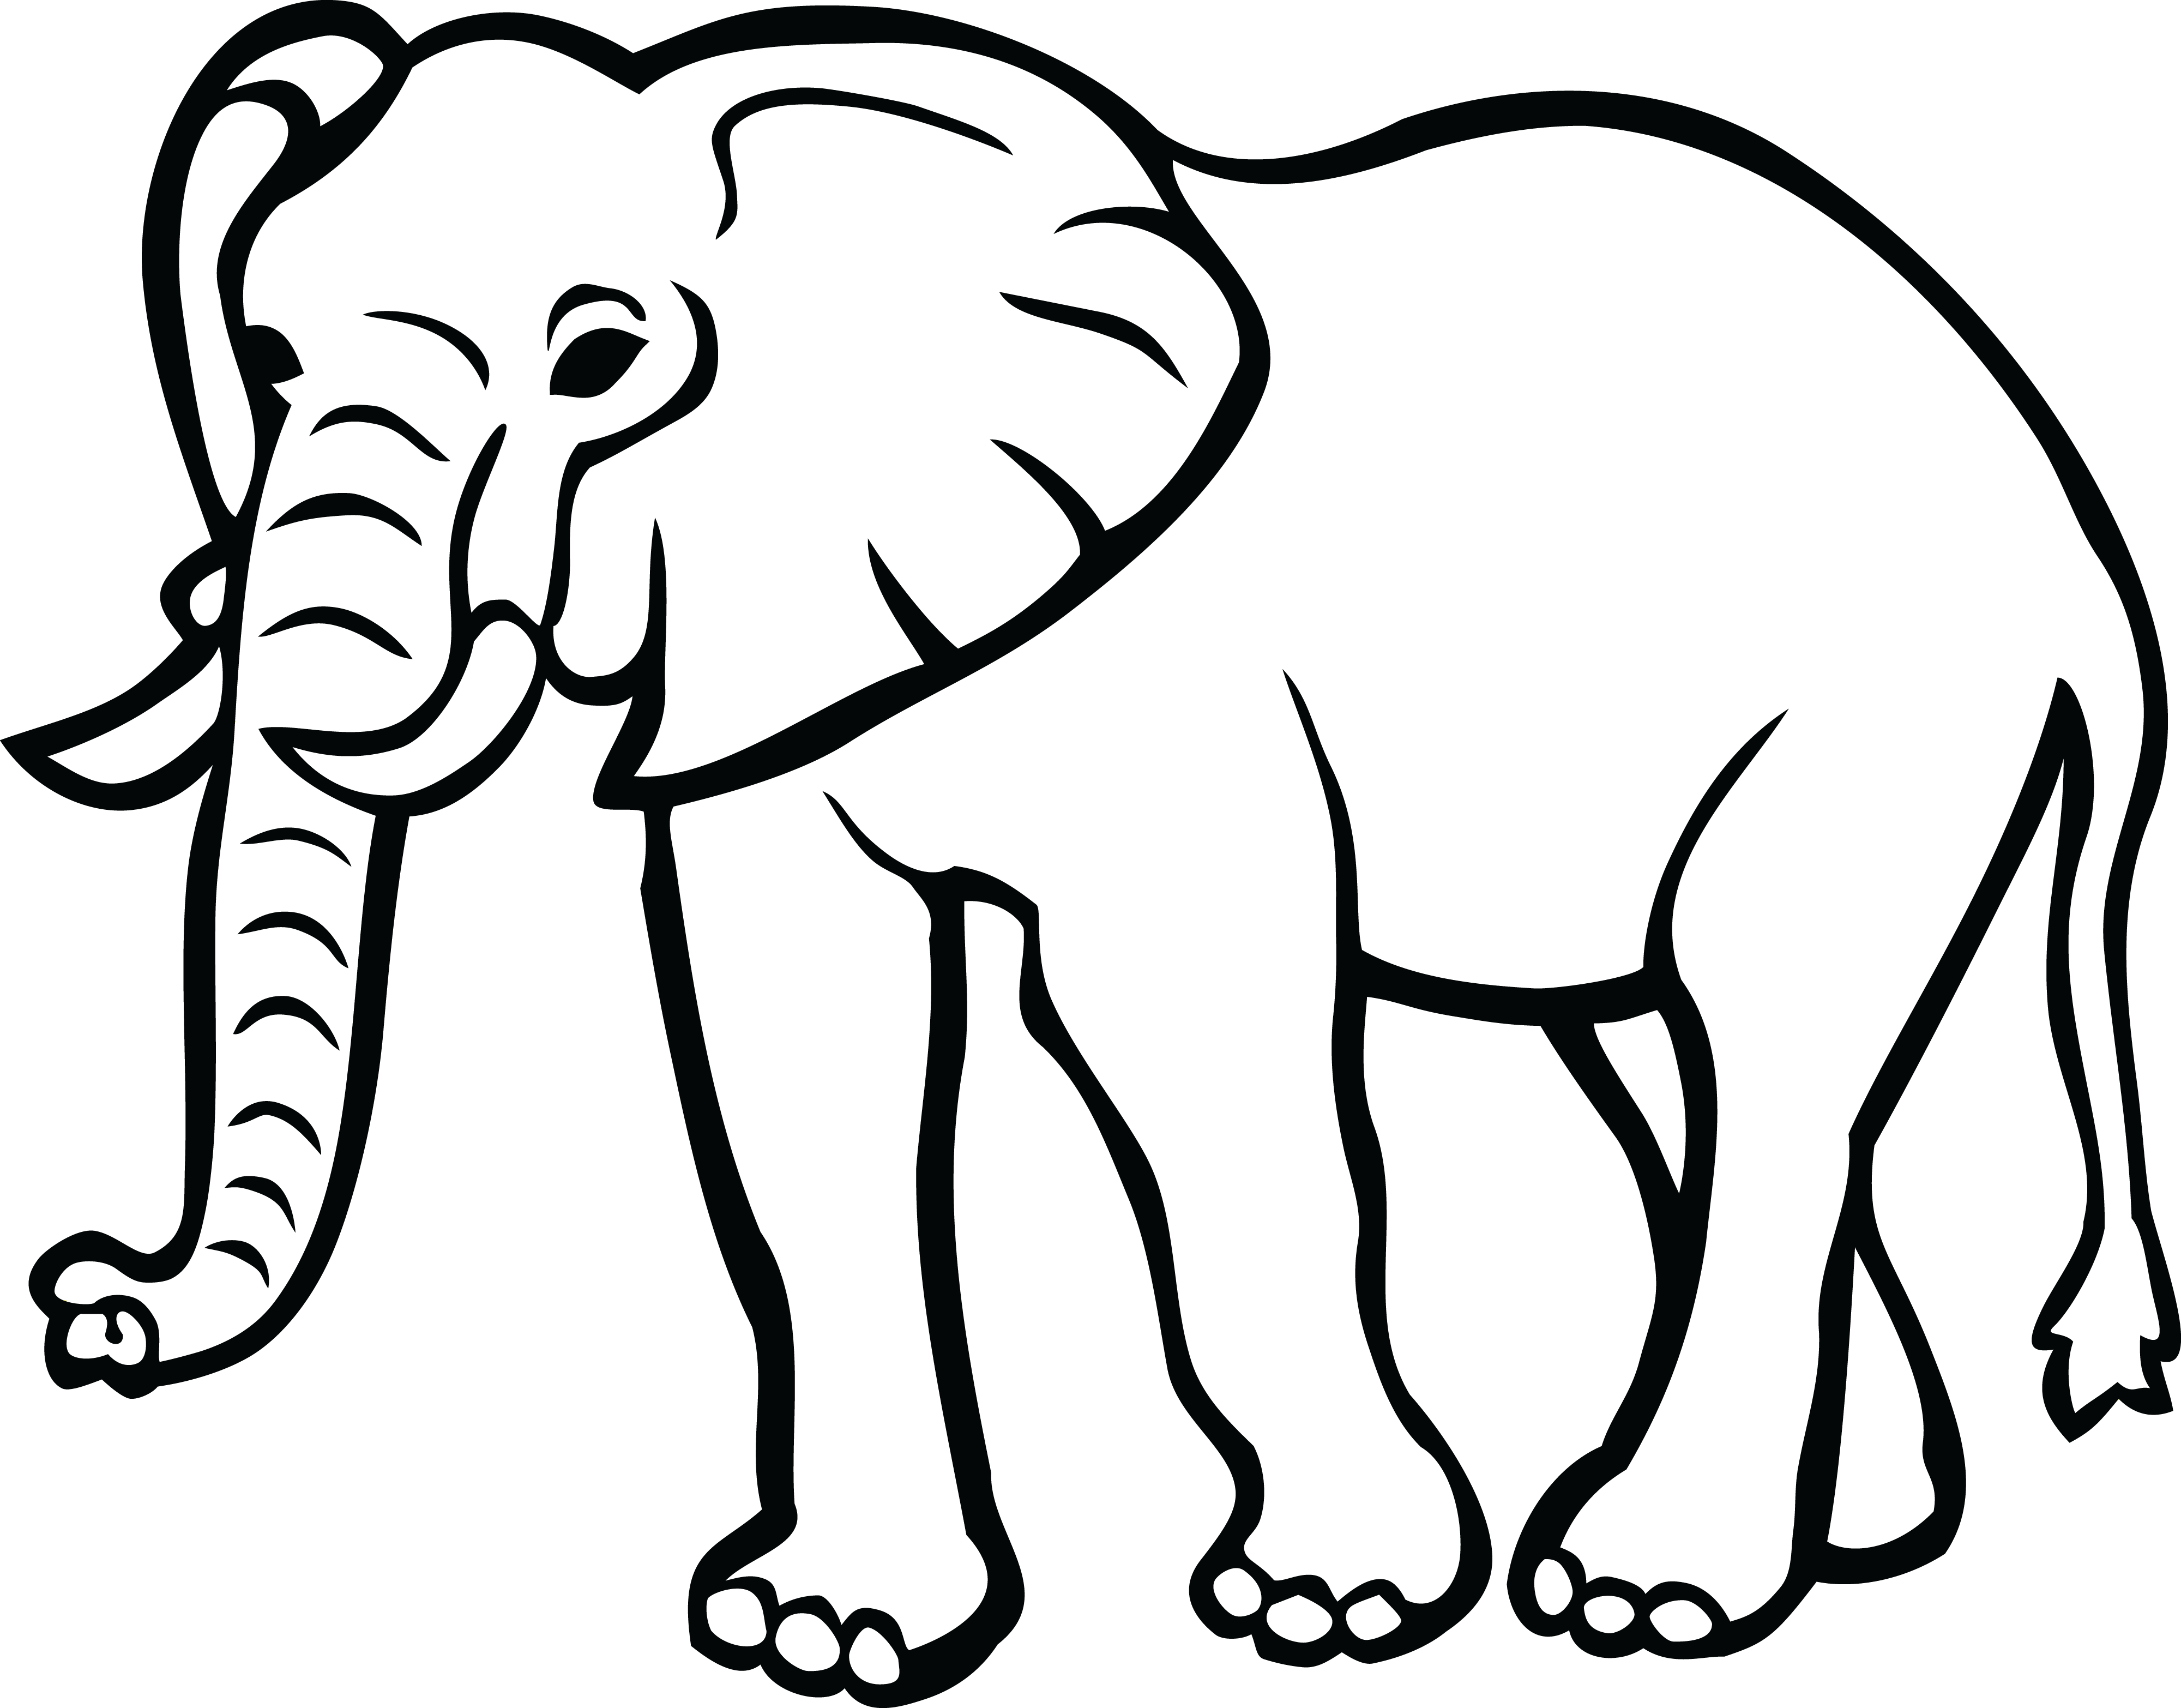 Elephant Black and White Logo - Elephants Clipart 15 Elephant Black And White For Free Download On ...